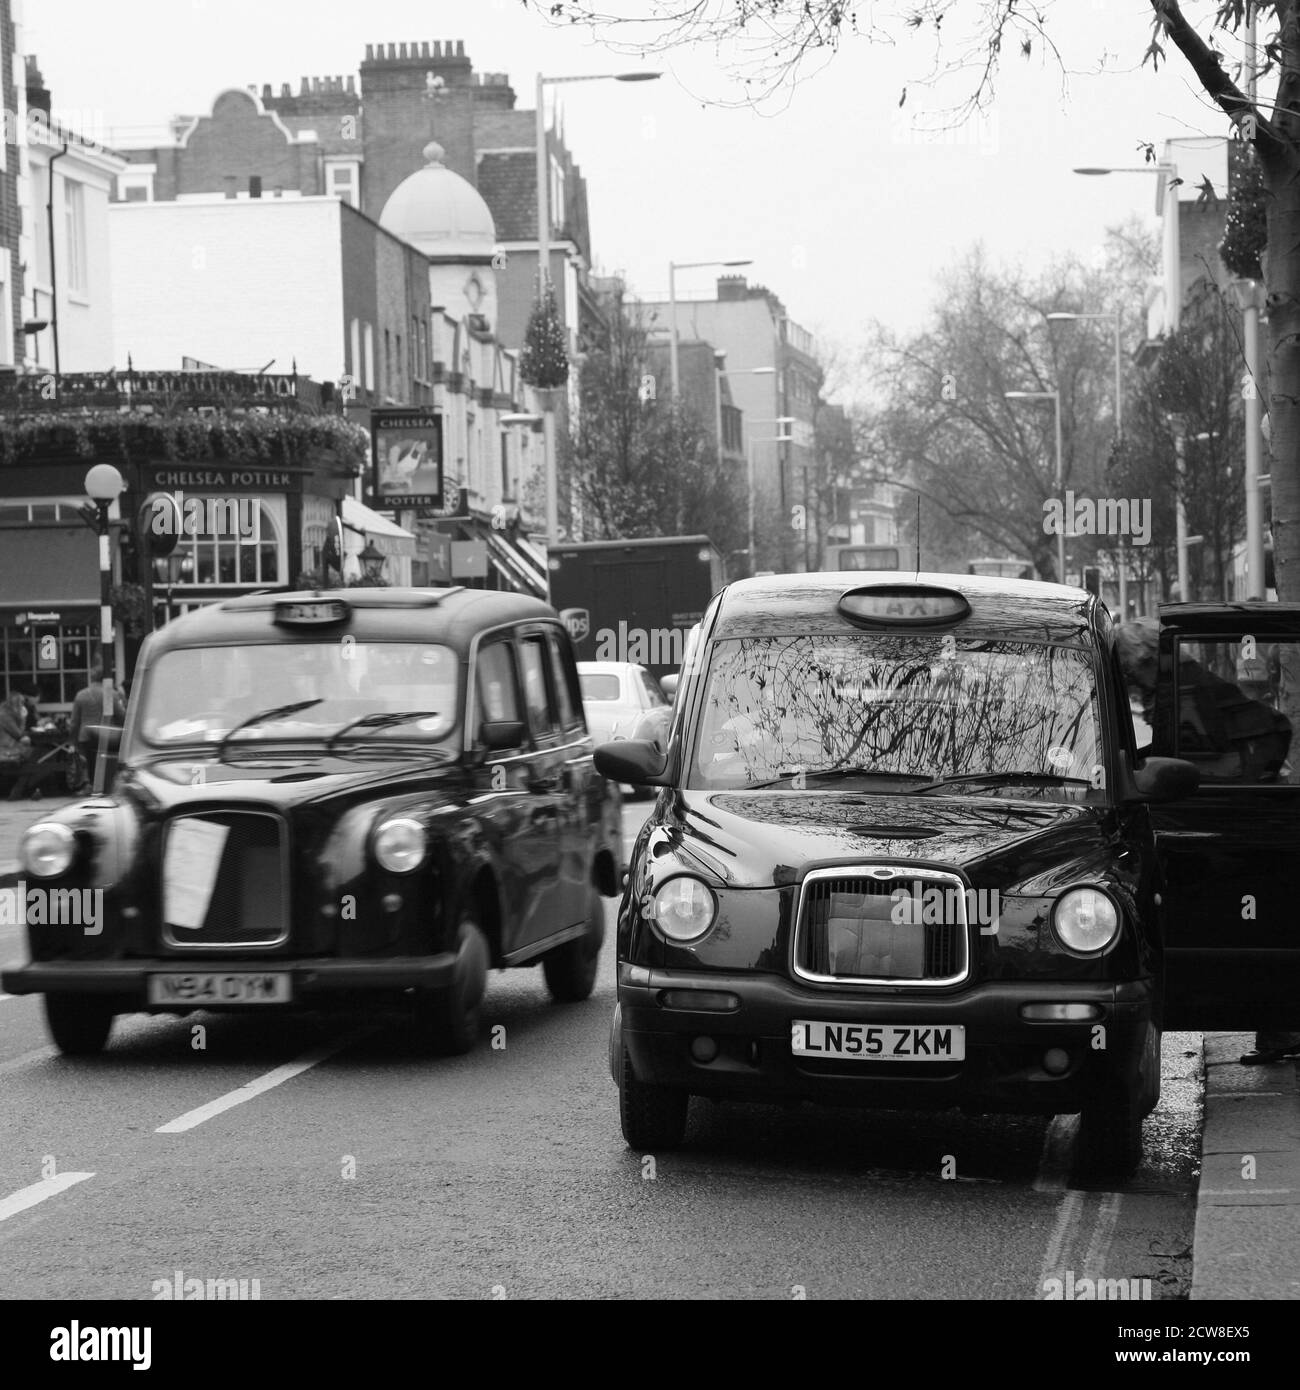 Londres, Royaume-Uni - 29 octobre 2010 : taxi dans la rue de Londres. Les taxis sont le symbole le plus emblématique de Londres ainsi que le bus à impériale rouge de Londres. Banque D'Images